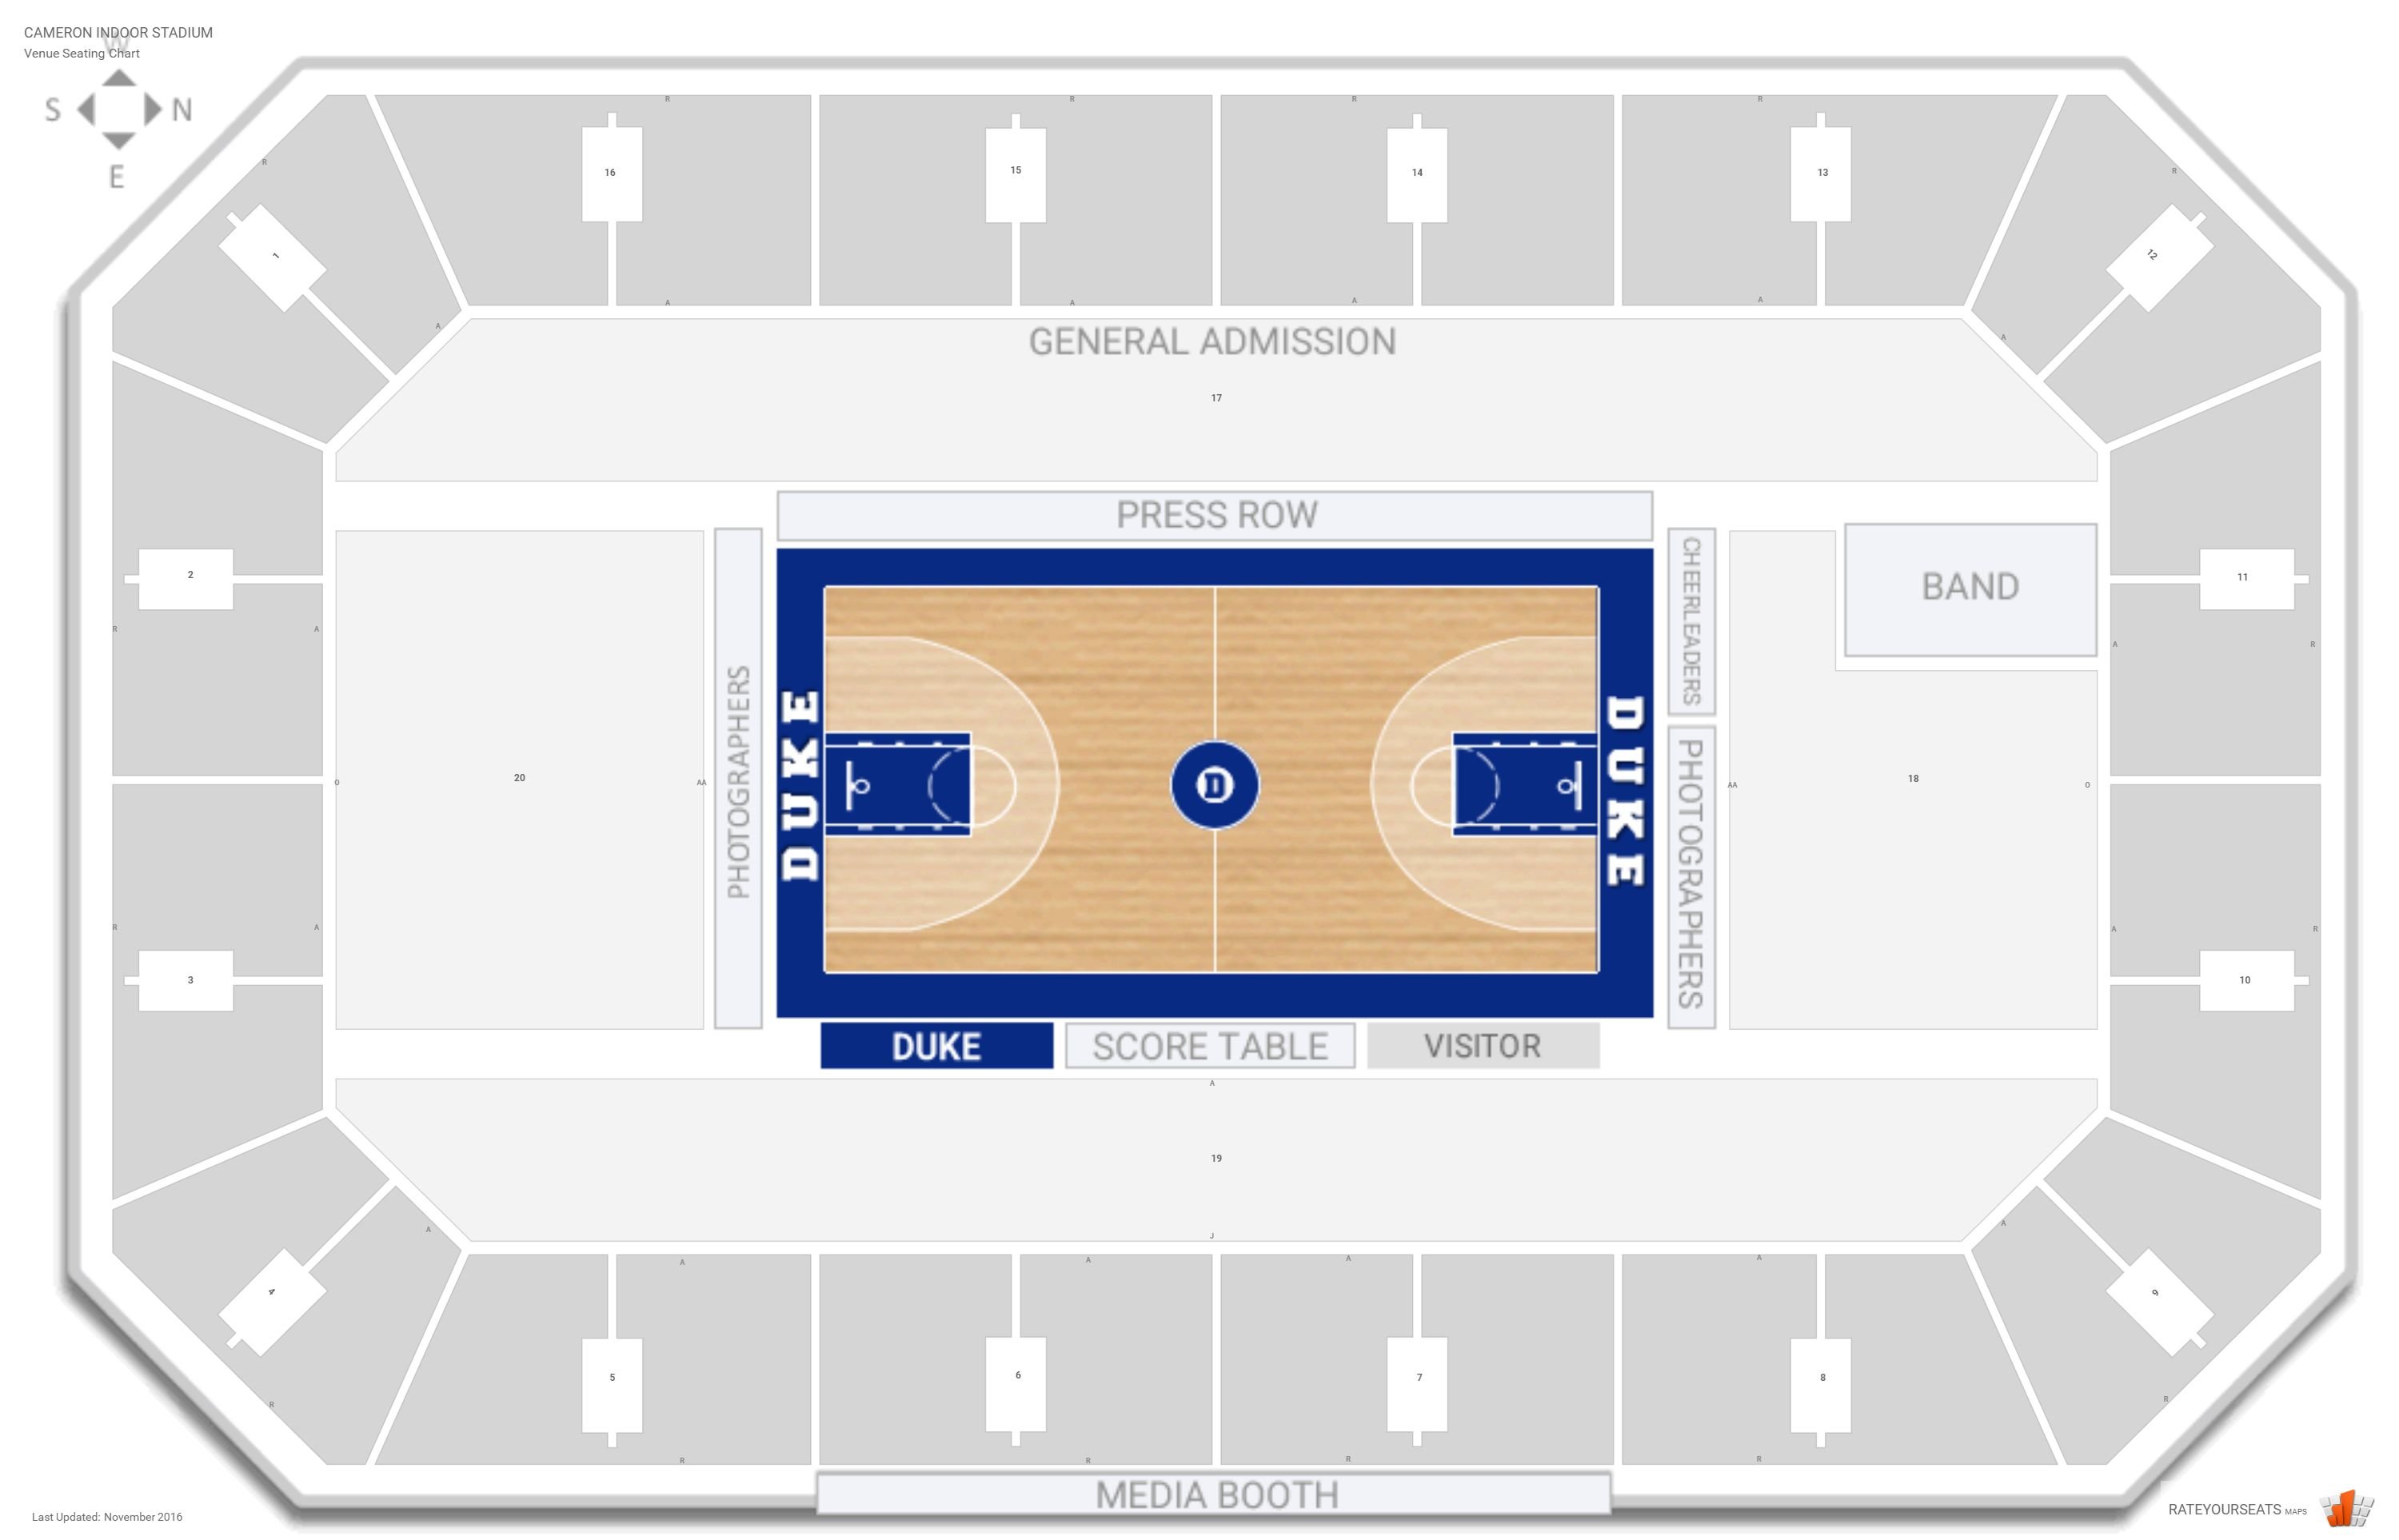 Cameron Indoor Stadium (Duke) Seating Guide